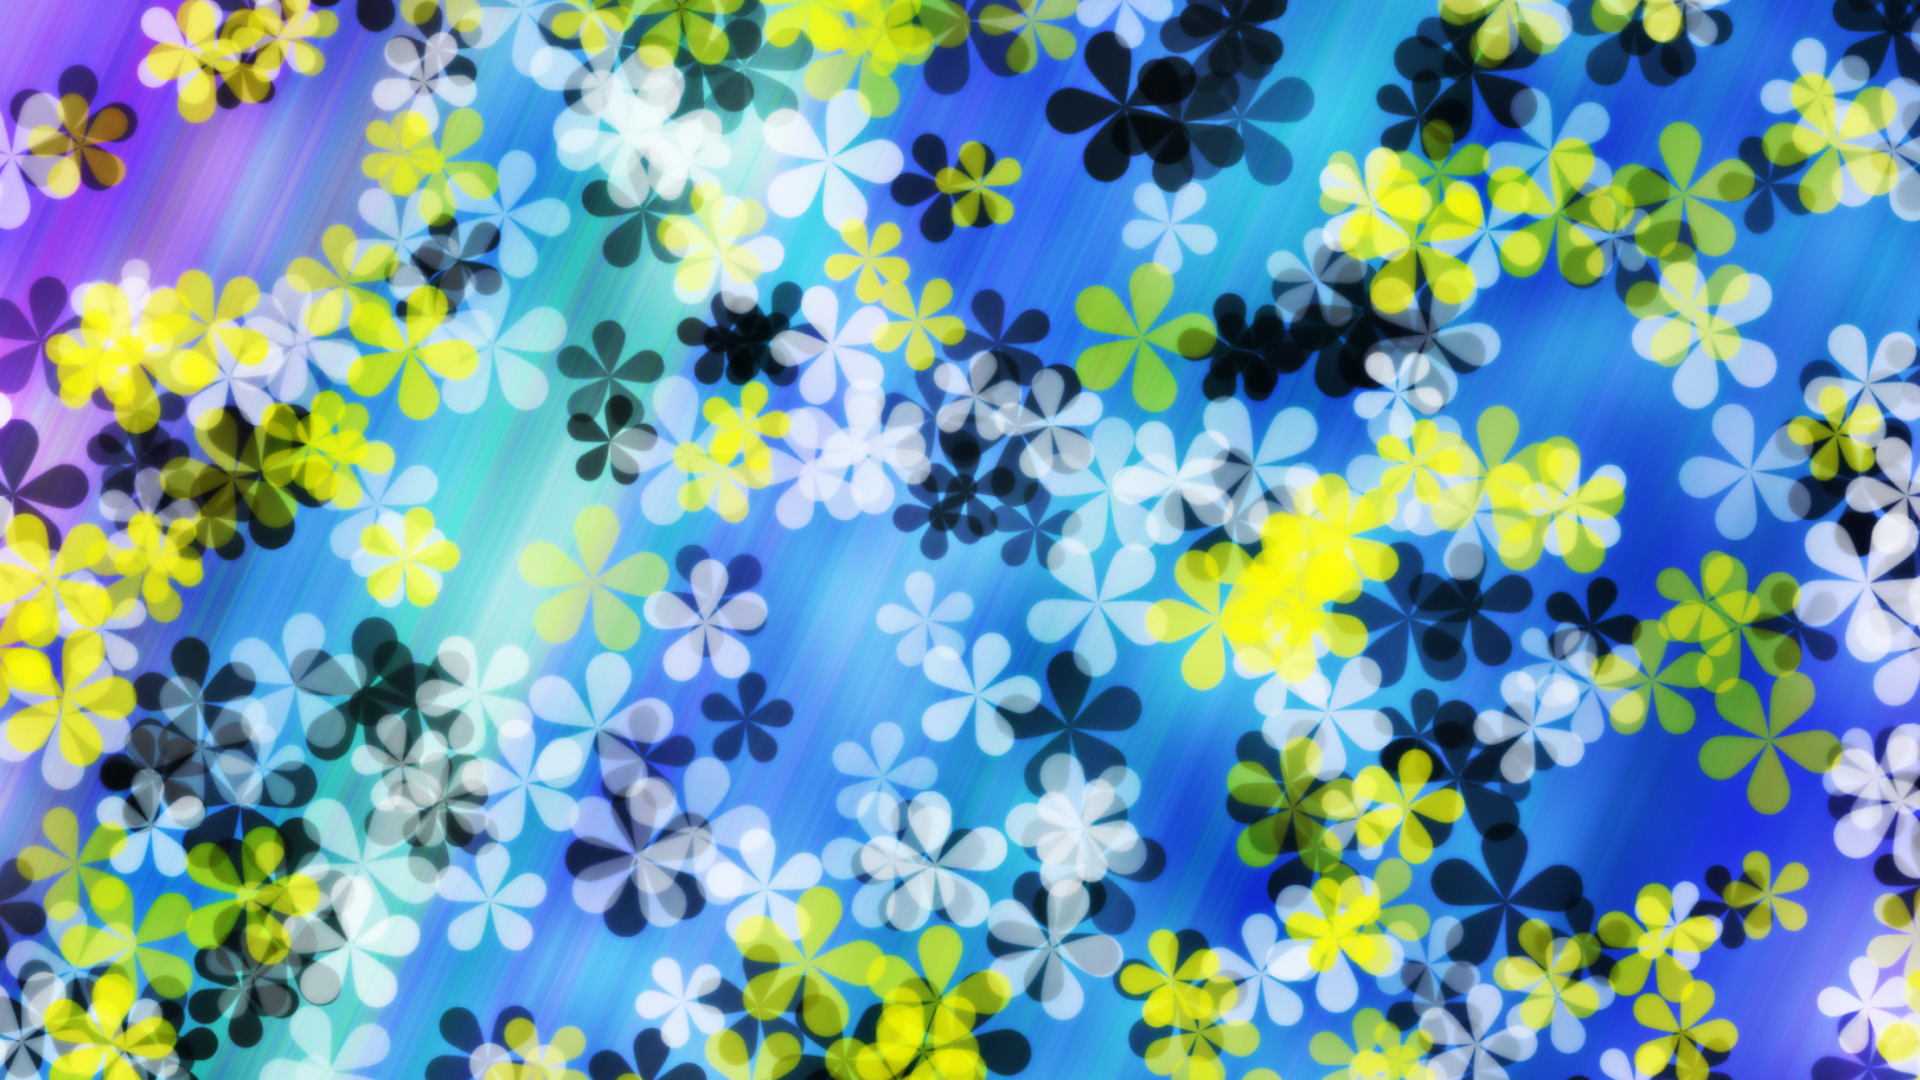 Sfondi Yellow And Blue Flowers Pattern 1920x1080